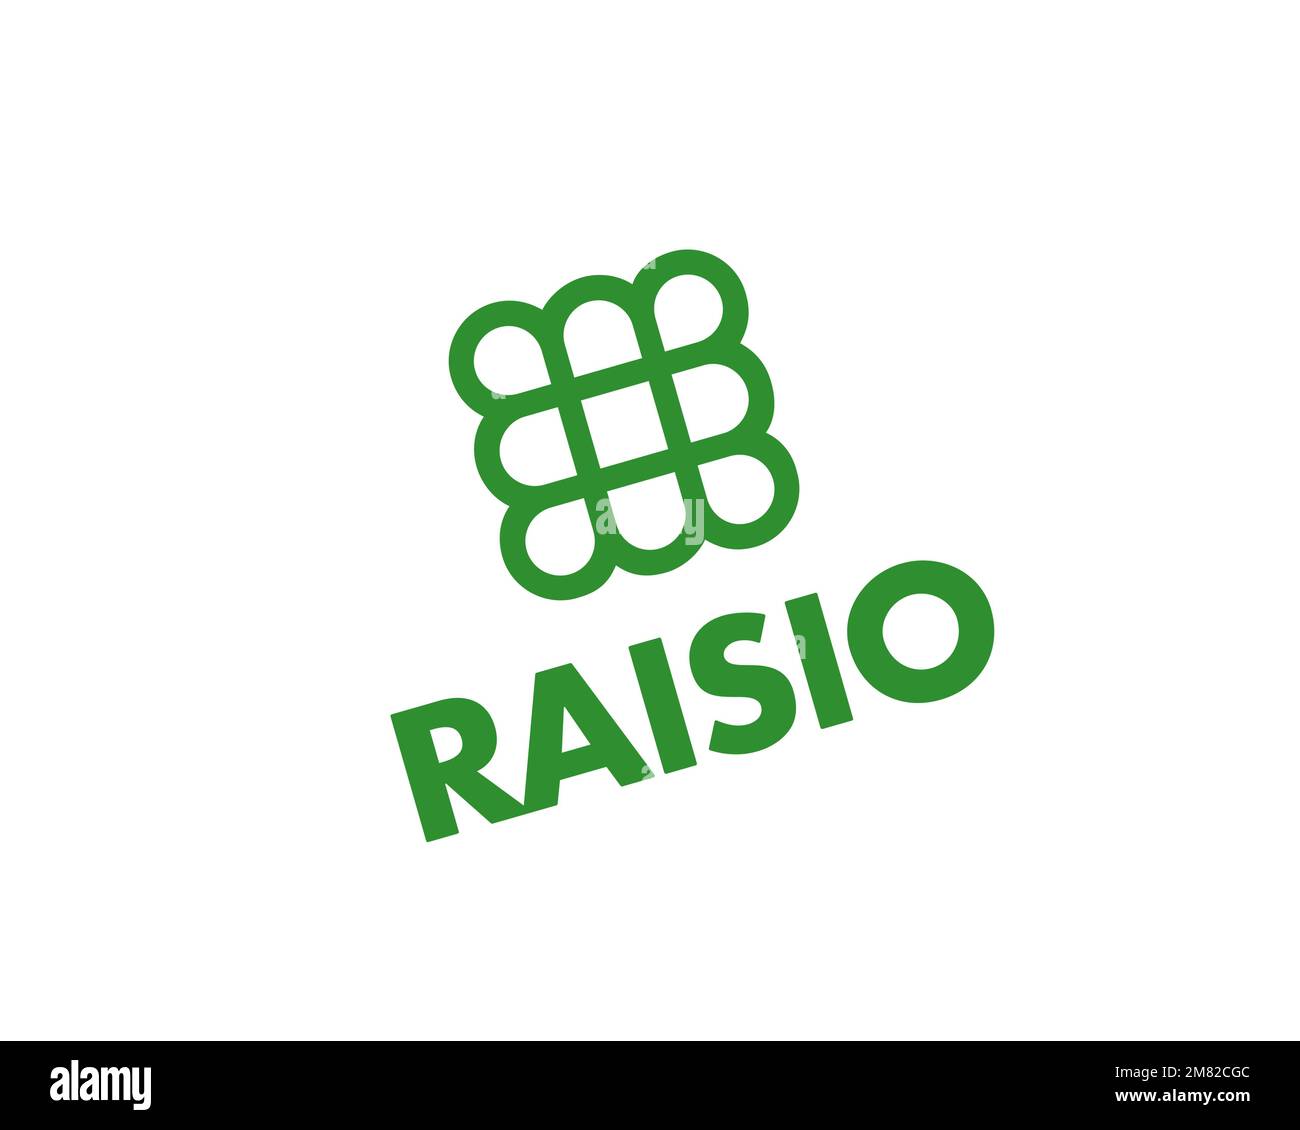 Raisio Group, logo pivoté, fond blanc Banque D'Images